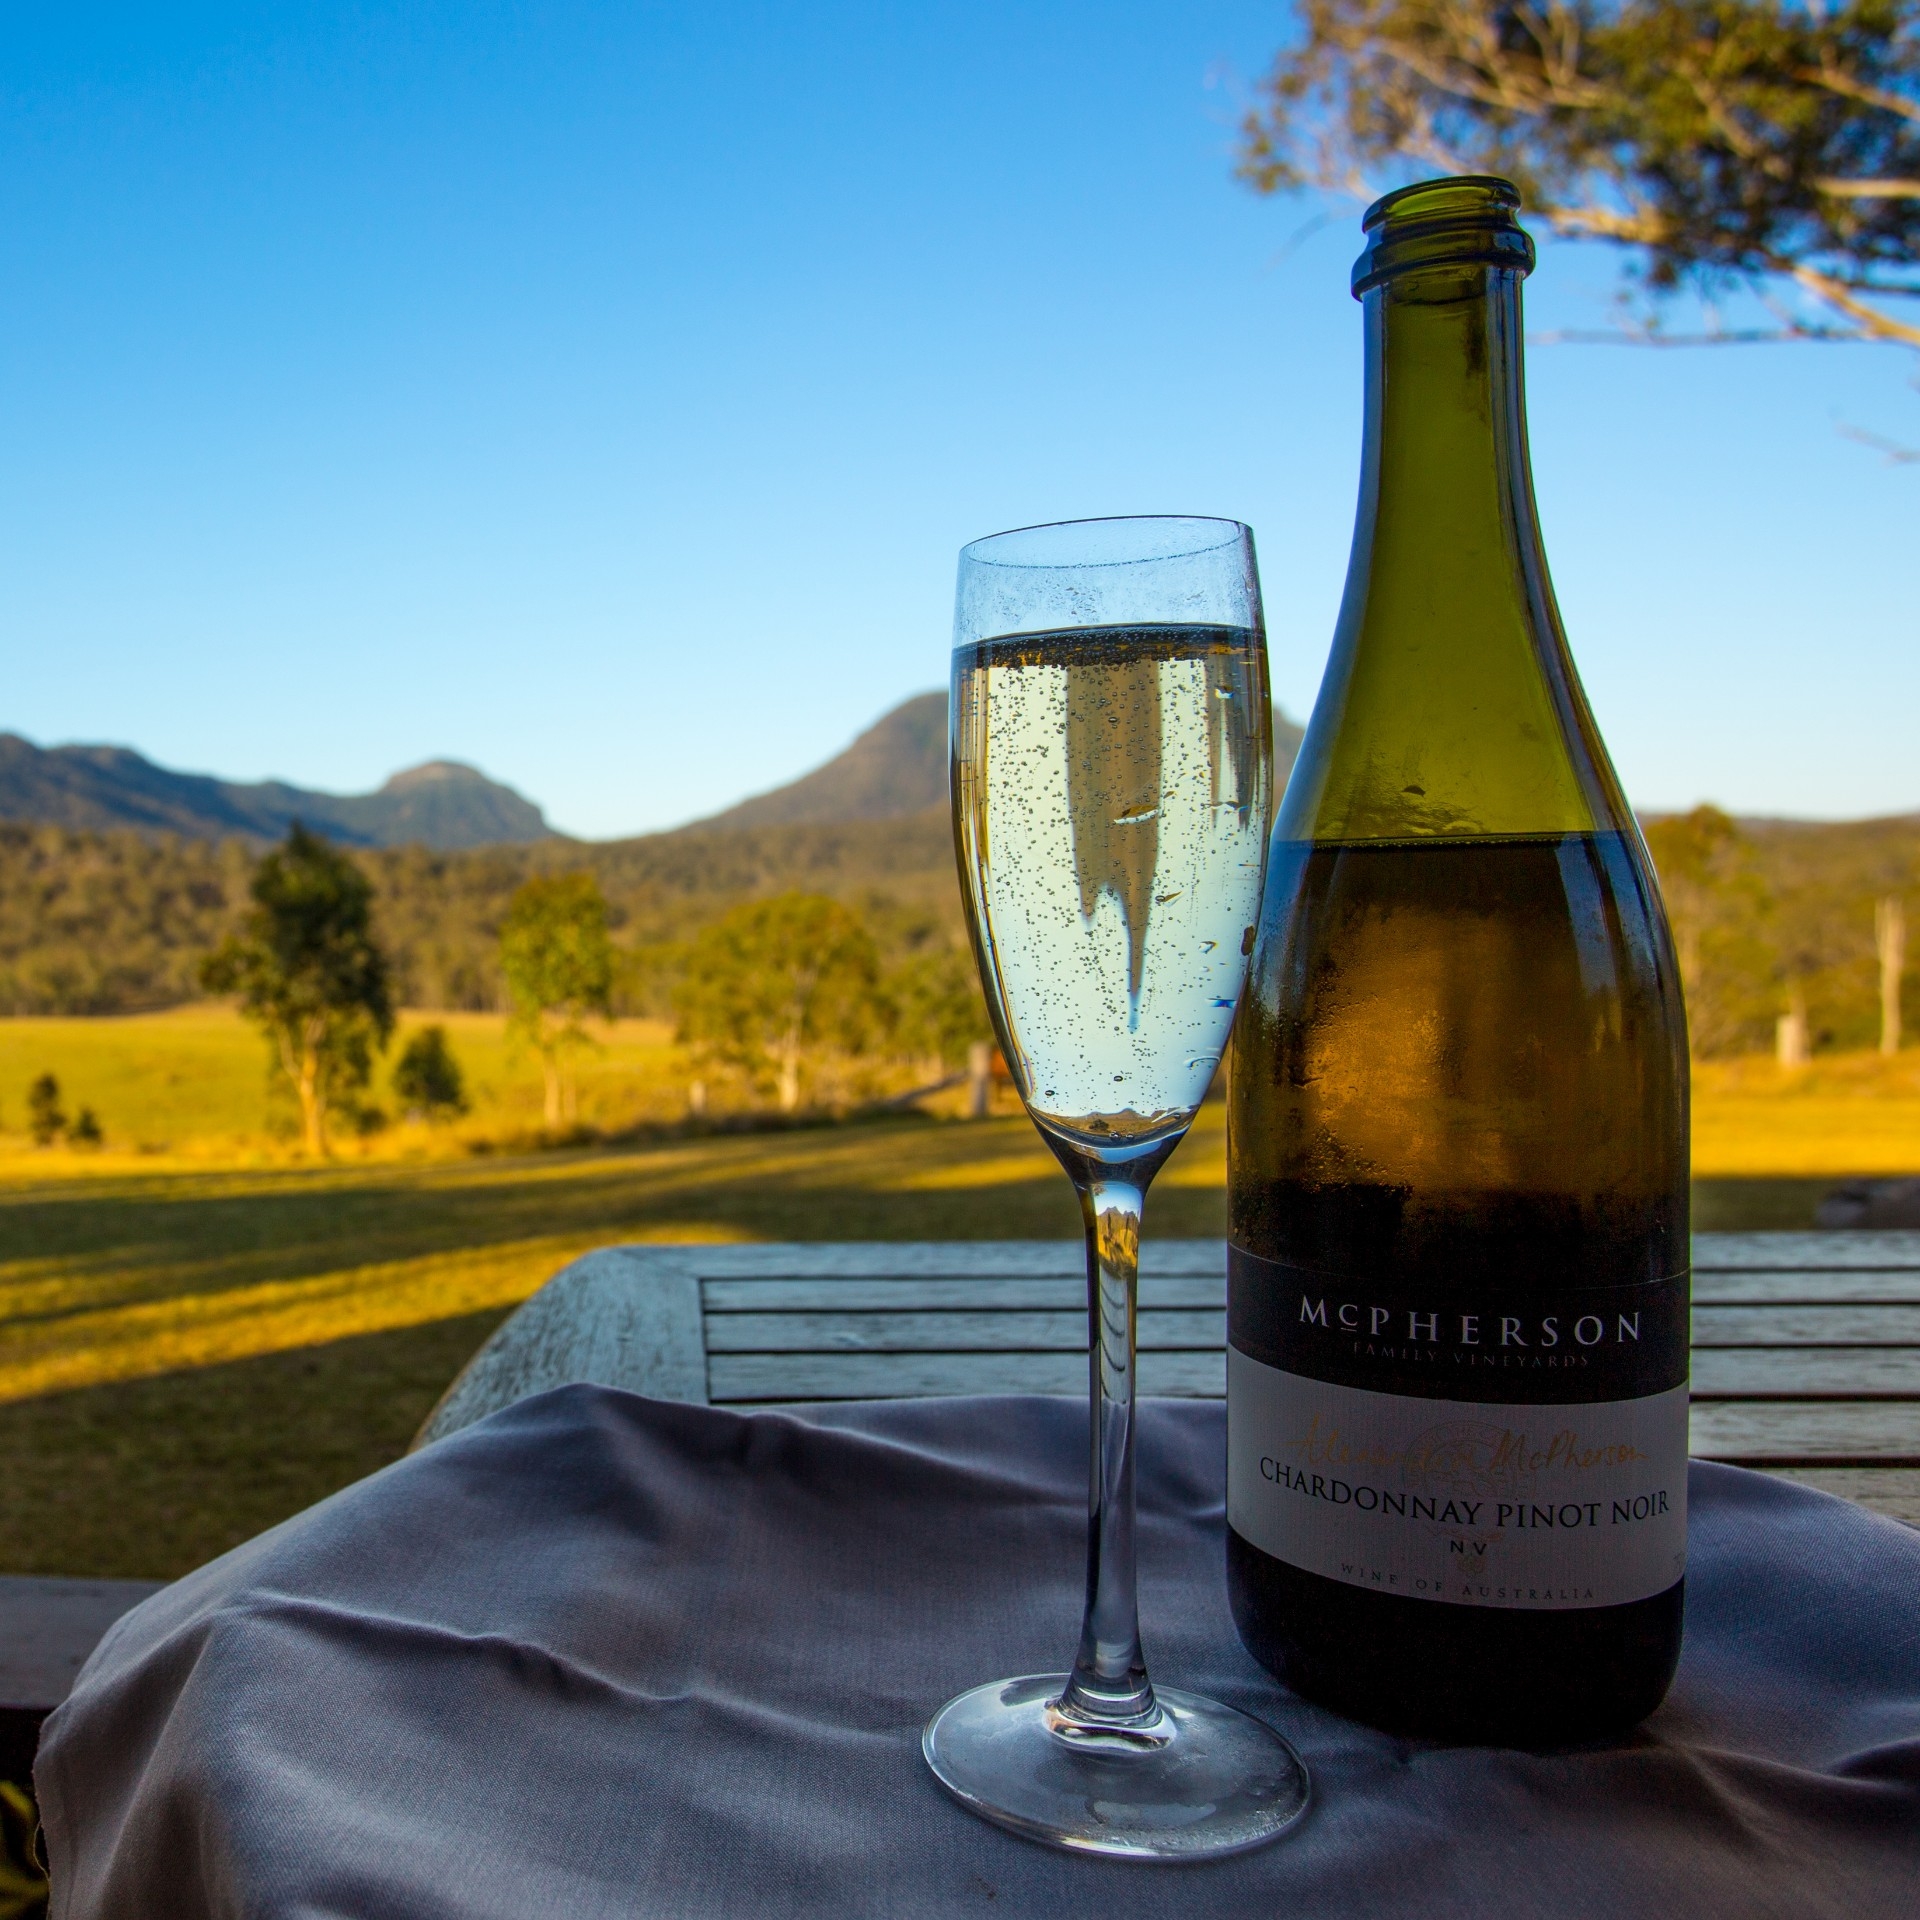 斯帕瑟树冠露营酒店的葡萄酒瓶和酒杯 © 斯帕瑟度假村/澳大利亚徒步之旅版权所有